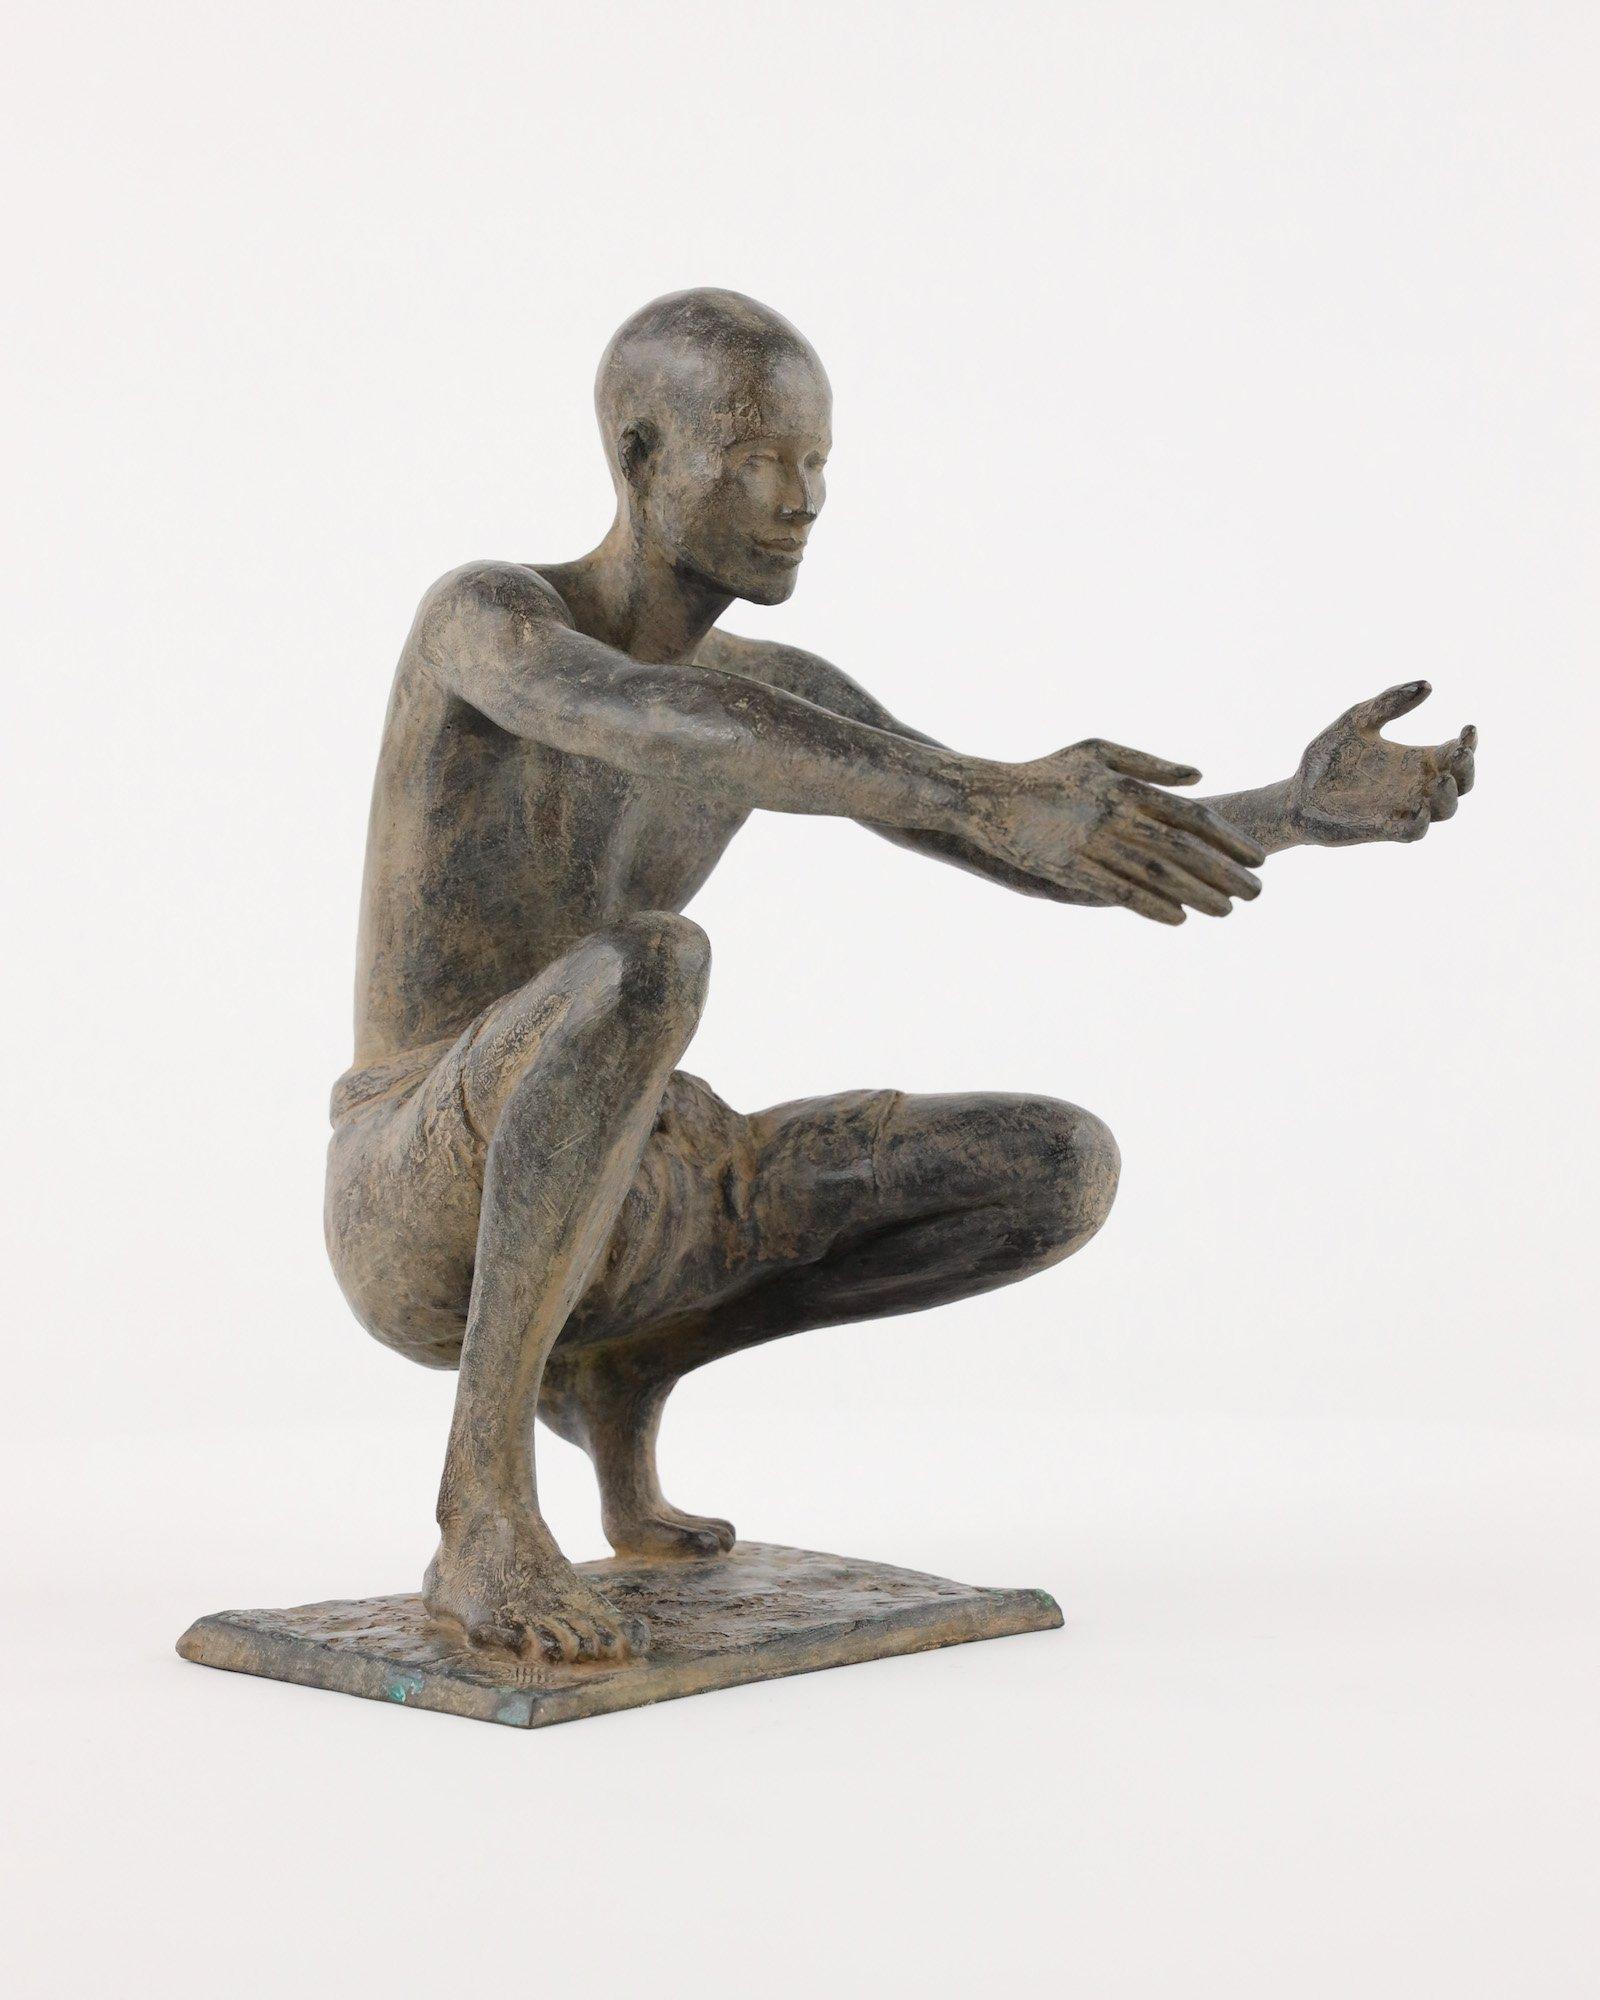 Le Welcome est une sculpture en bronze de l'artiste contemporaine française Marine de Soos, dont les dimensions sont de 31 × 28 × 20 cm (12,2 × 11 × 7,9 in). 
La sculpture est signée et numérotée, elle fait partie d'une édition limitée à 8